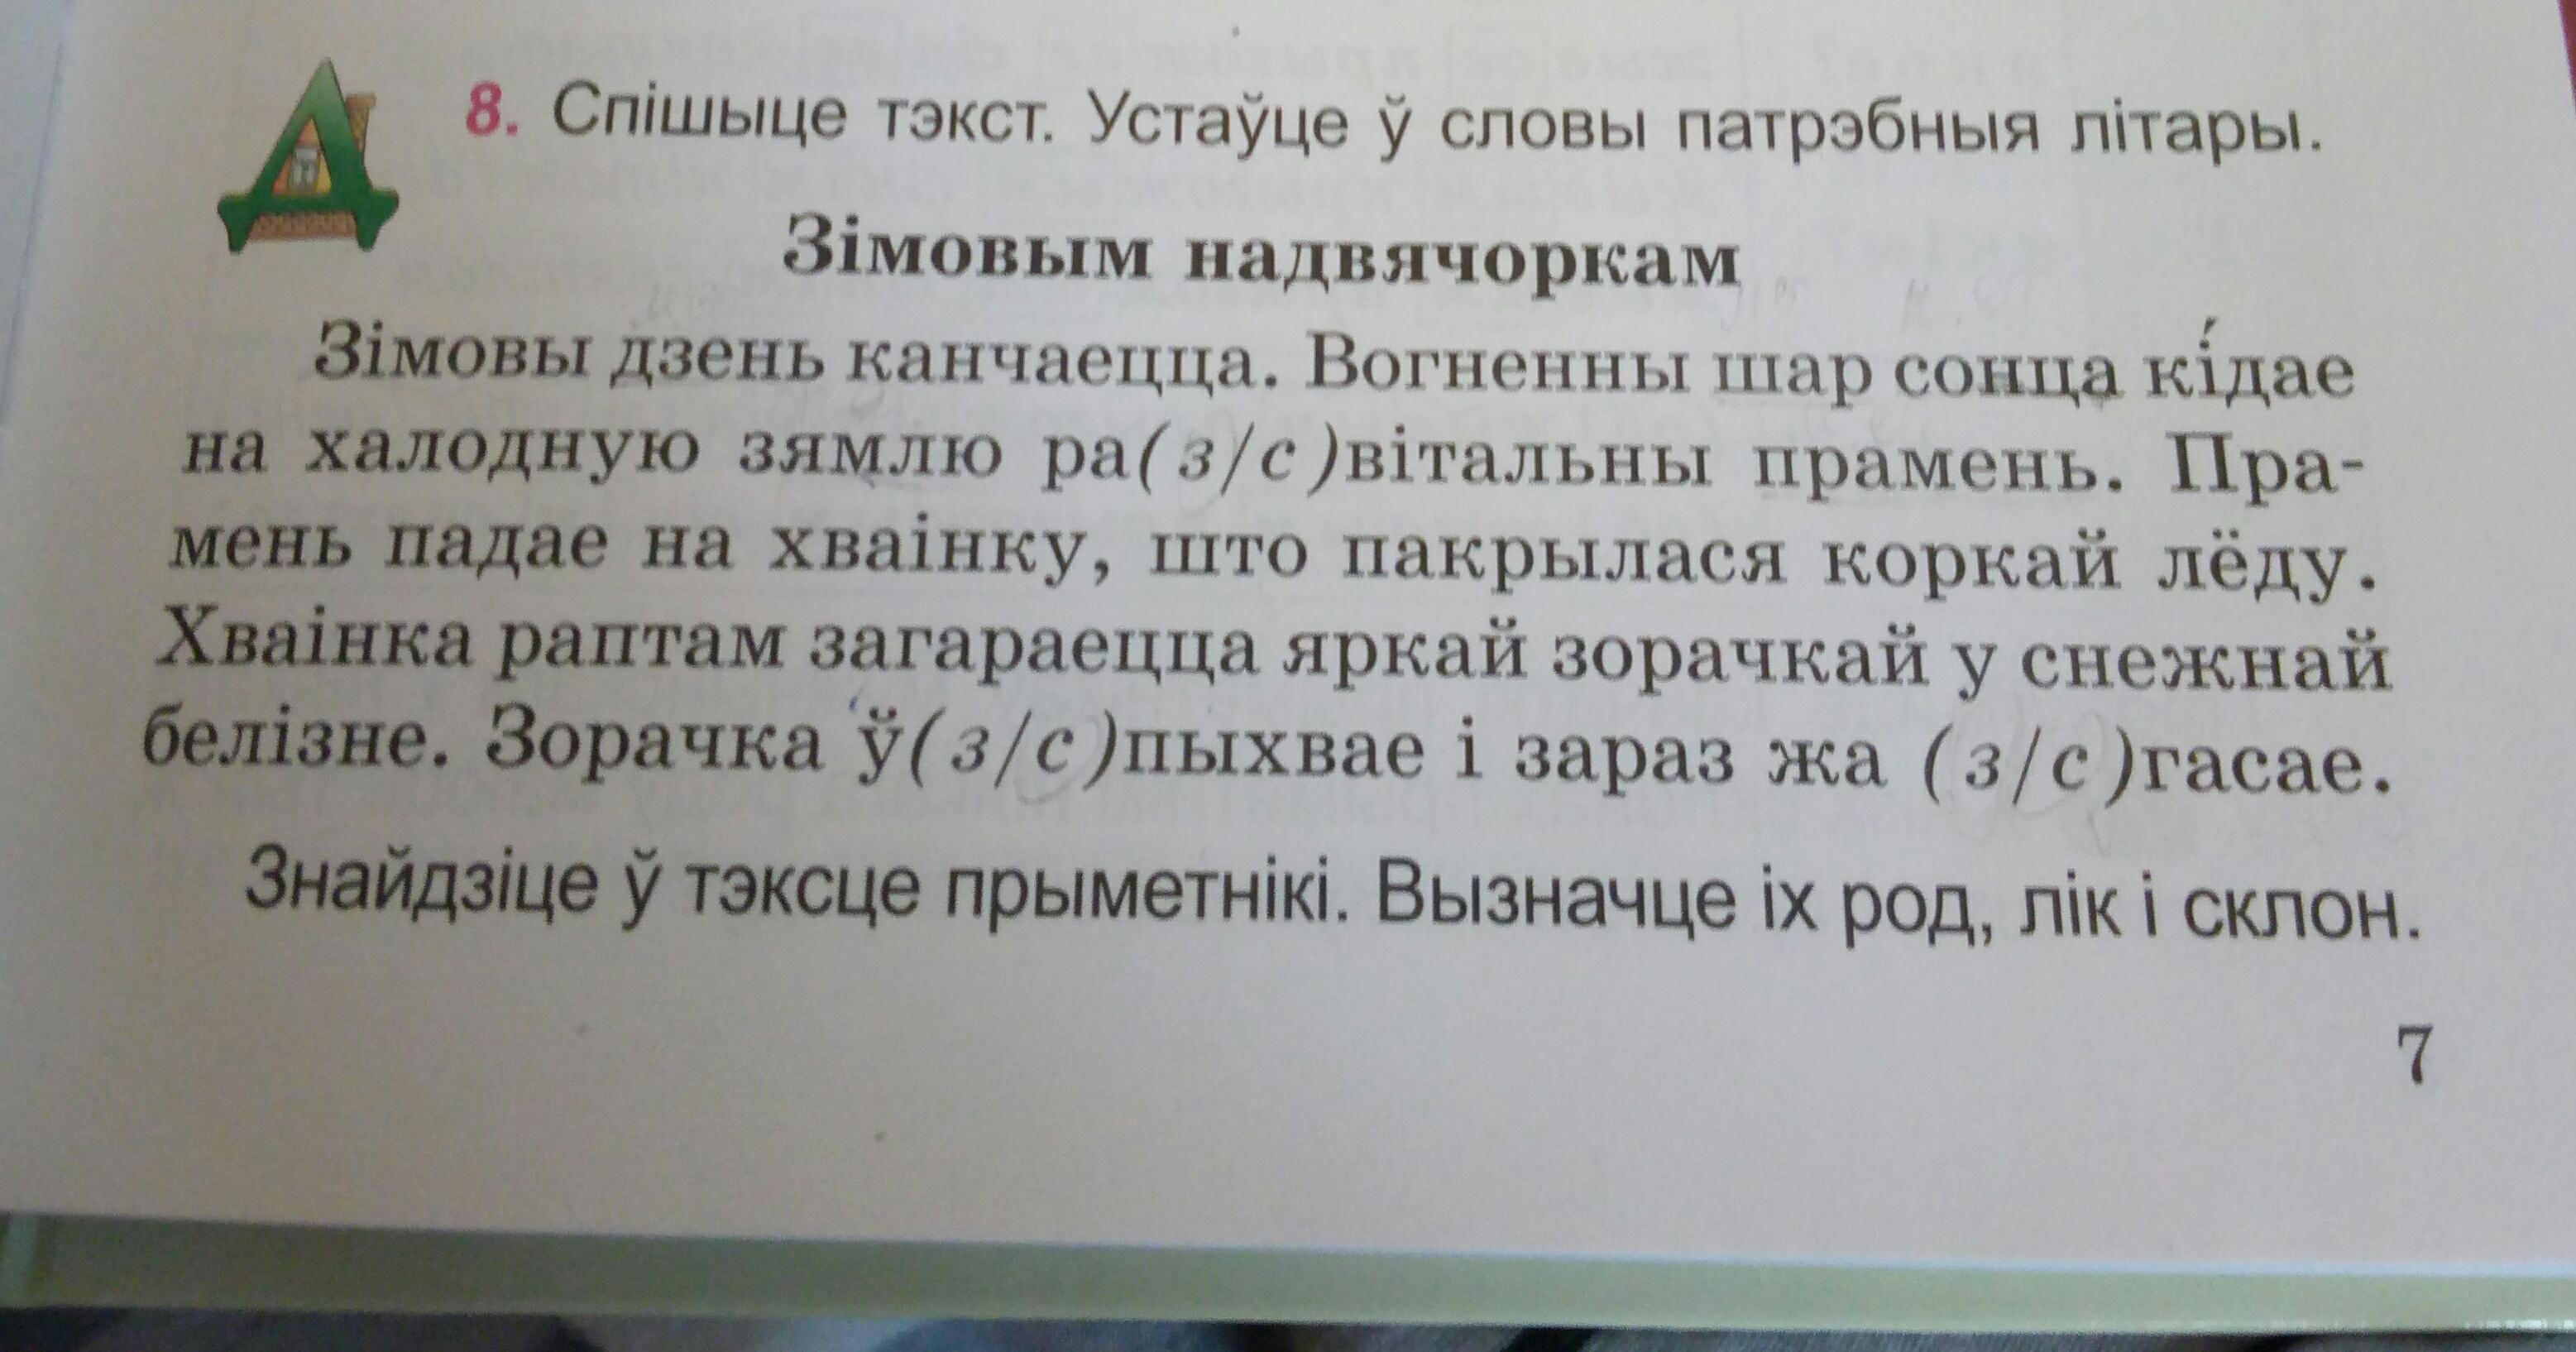 члены сказа в белорусском языке фото 63